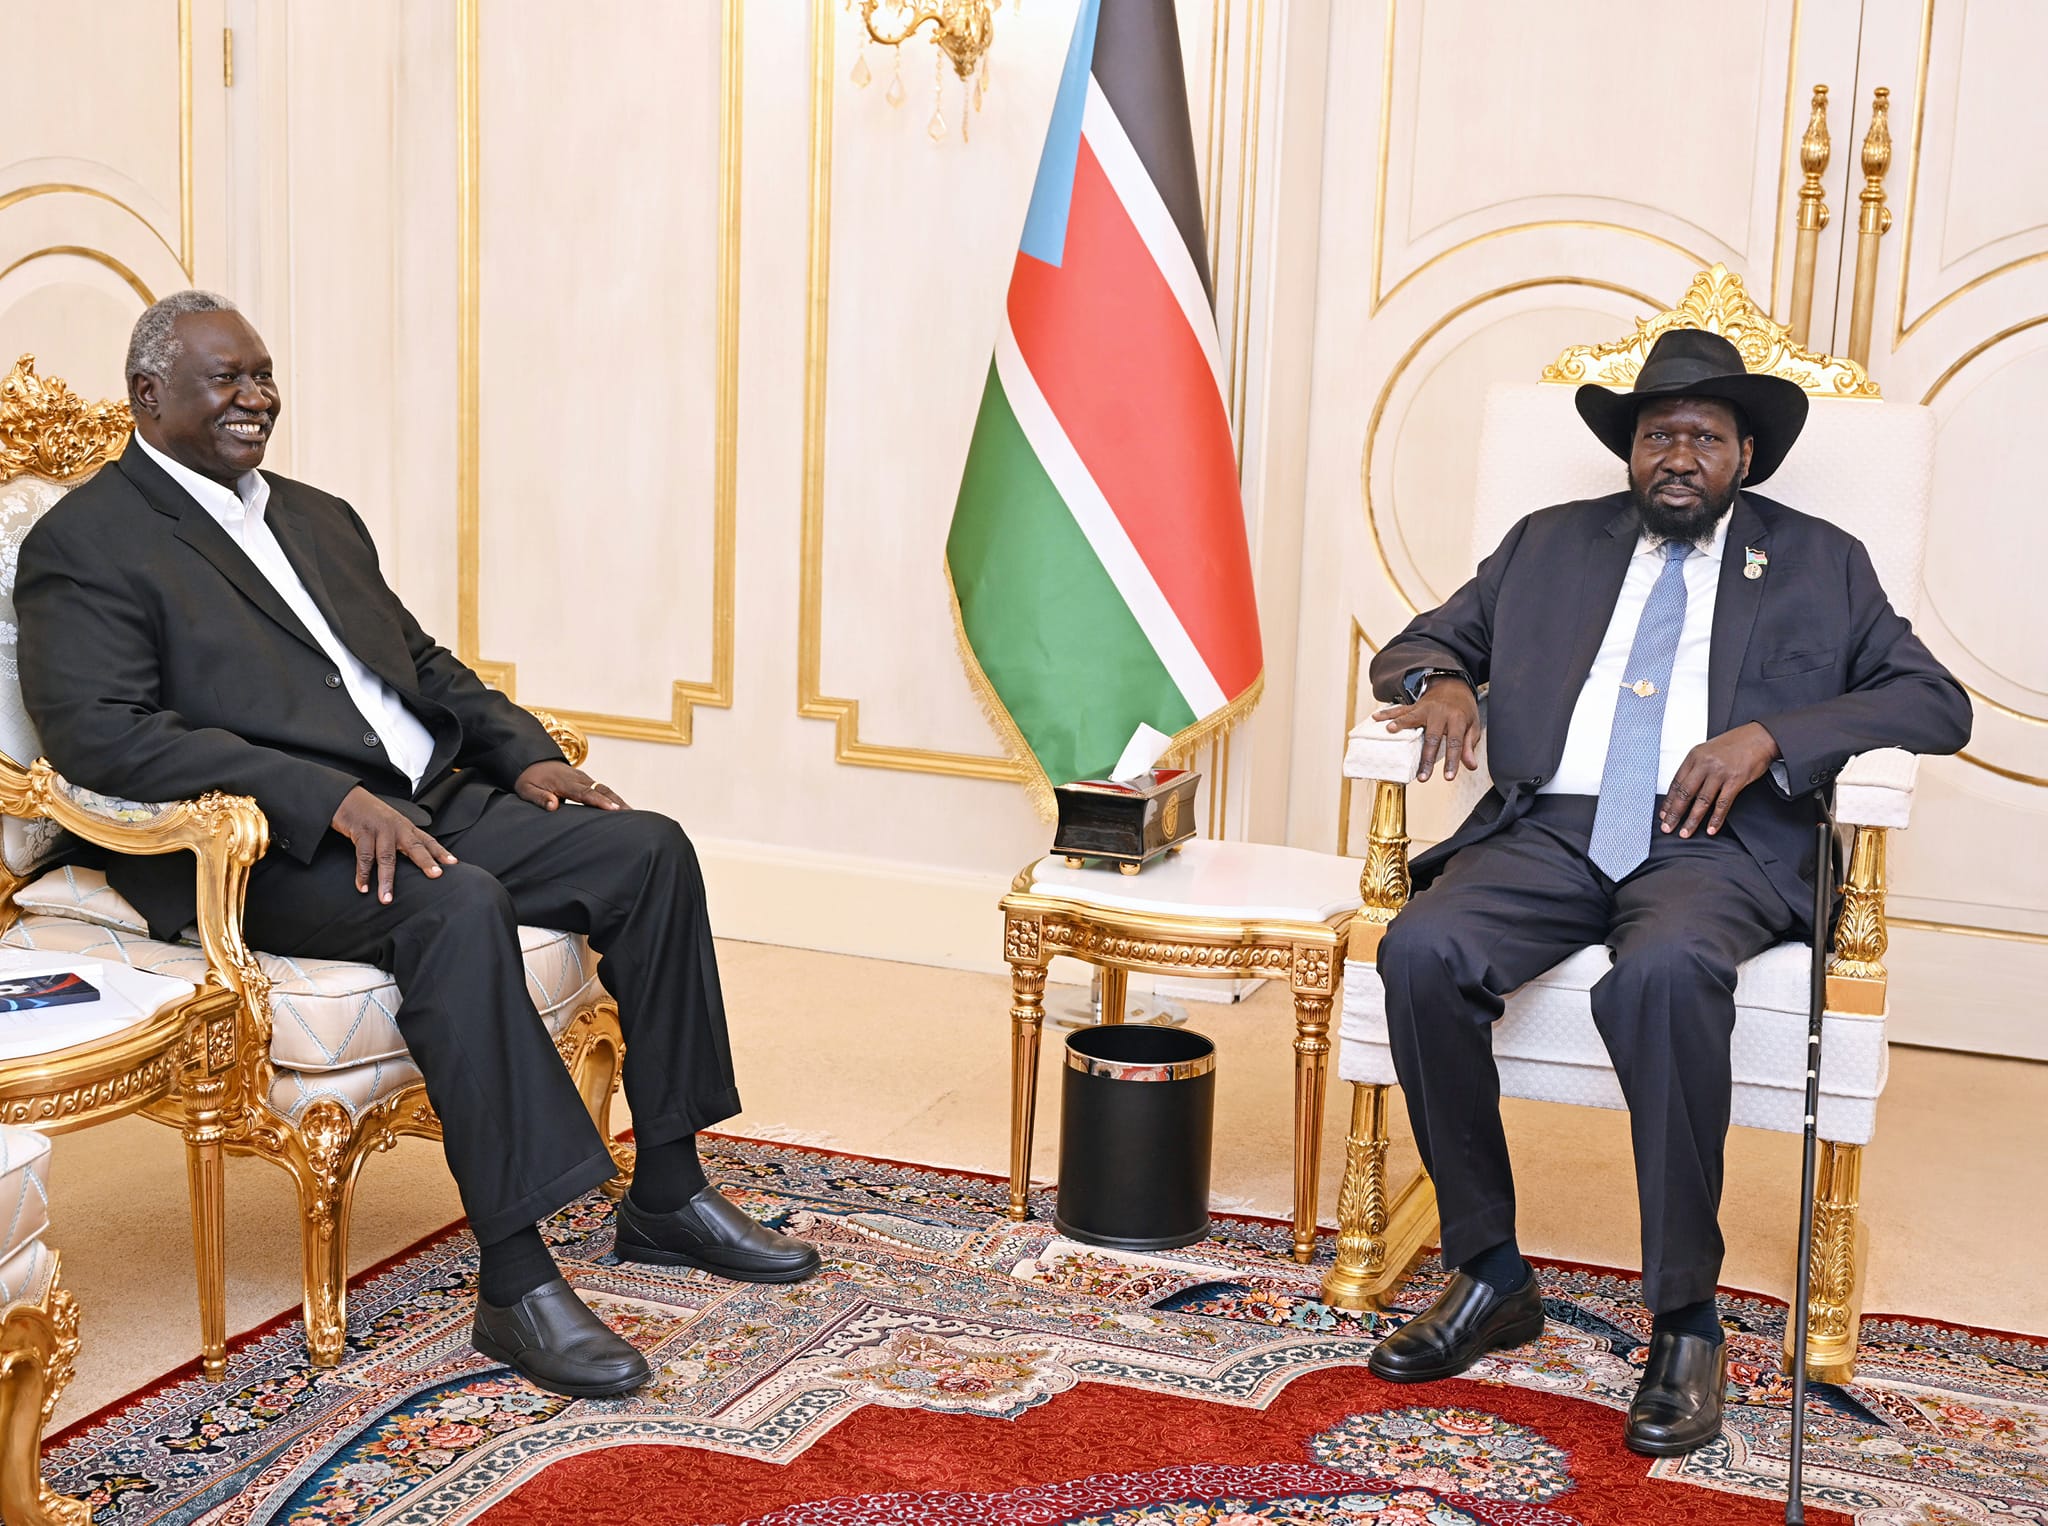 Al-Burhan’s deputy meets Kiir in Juba